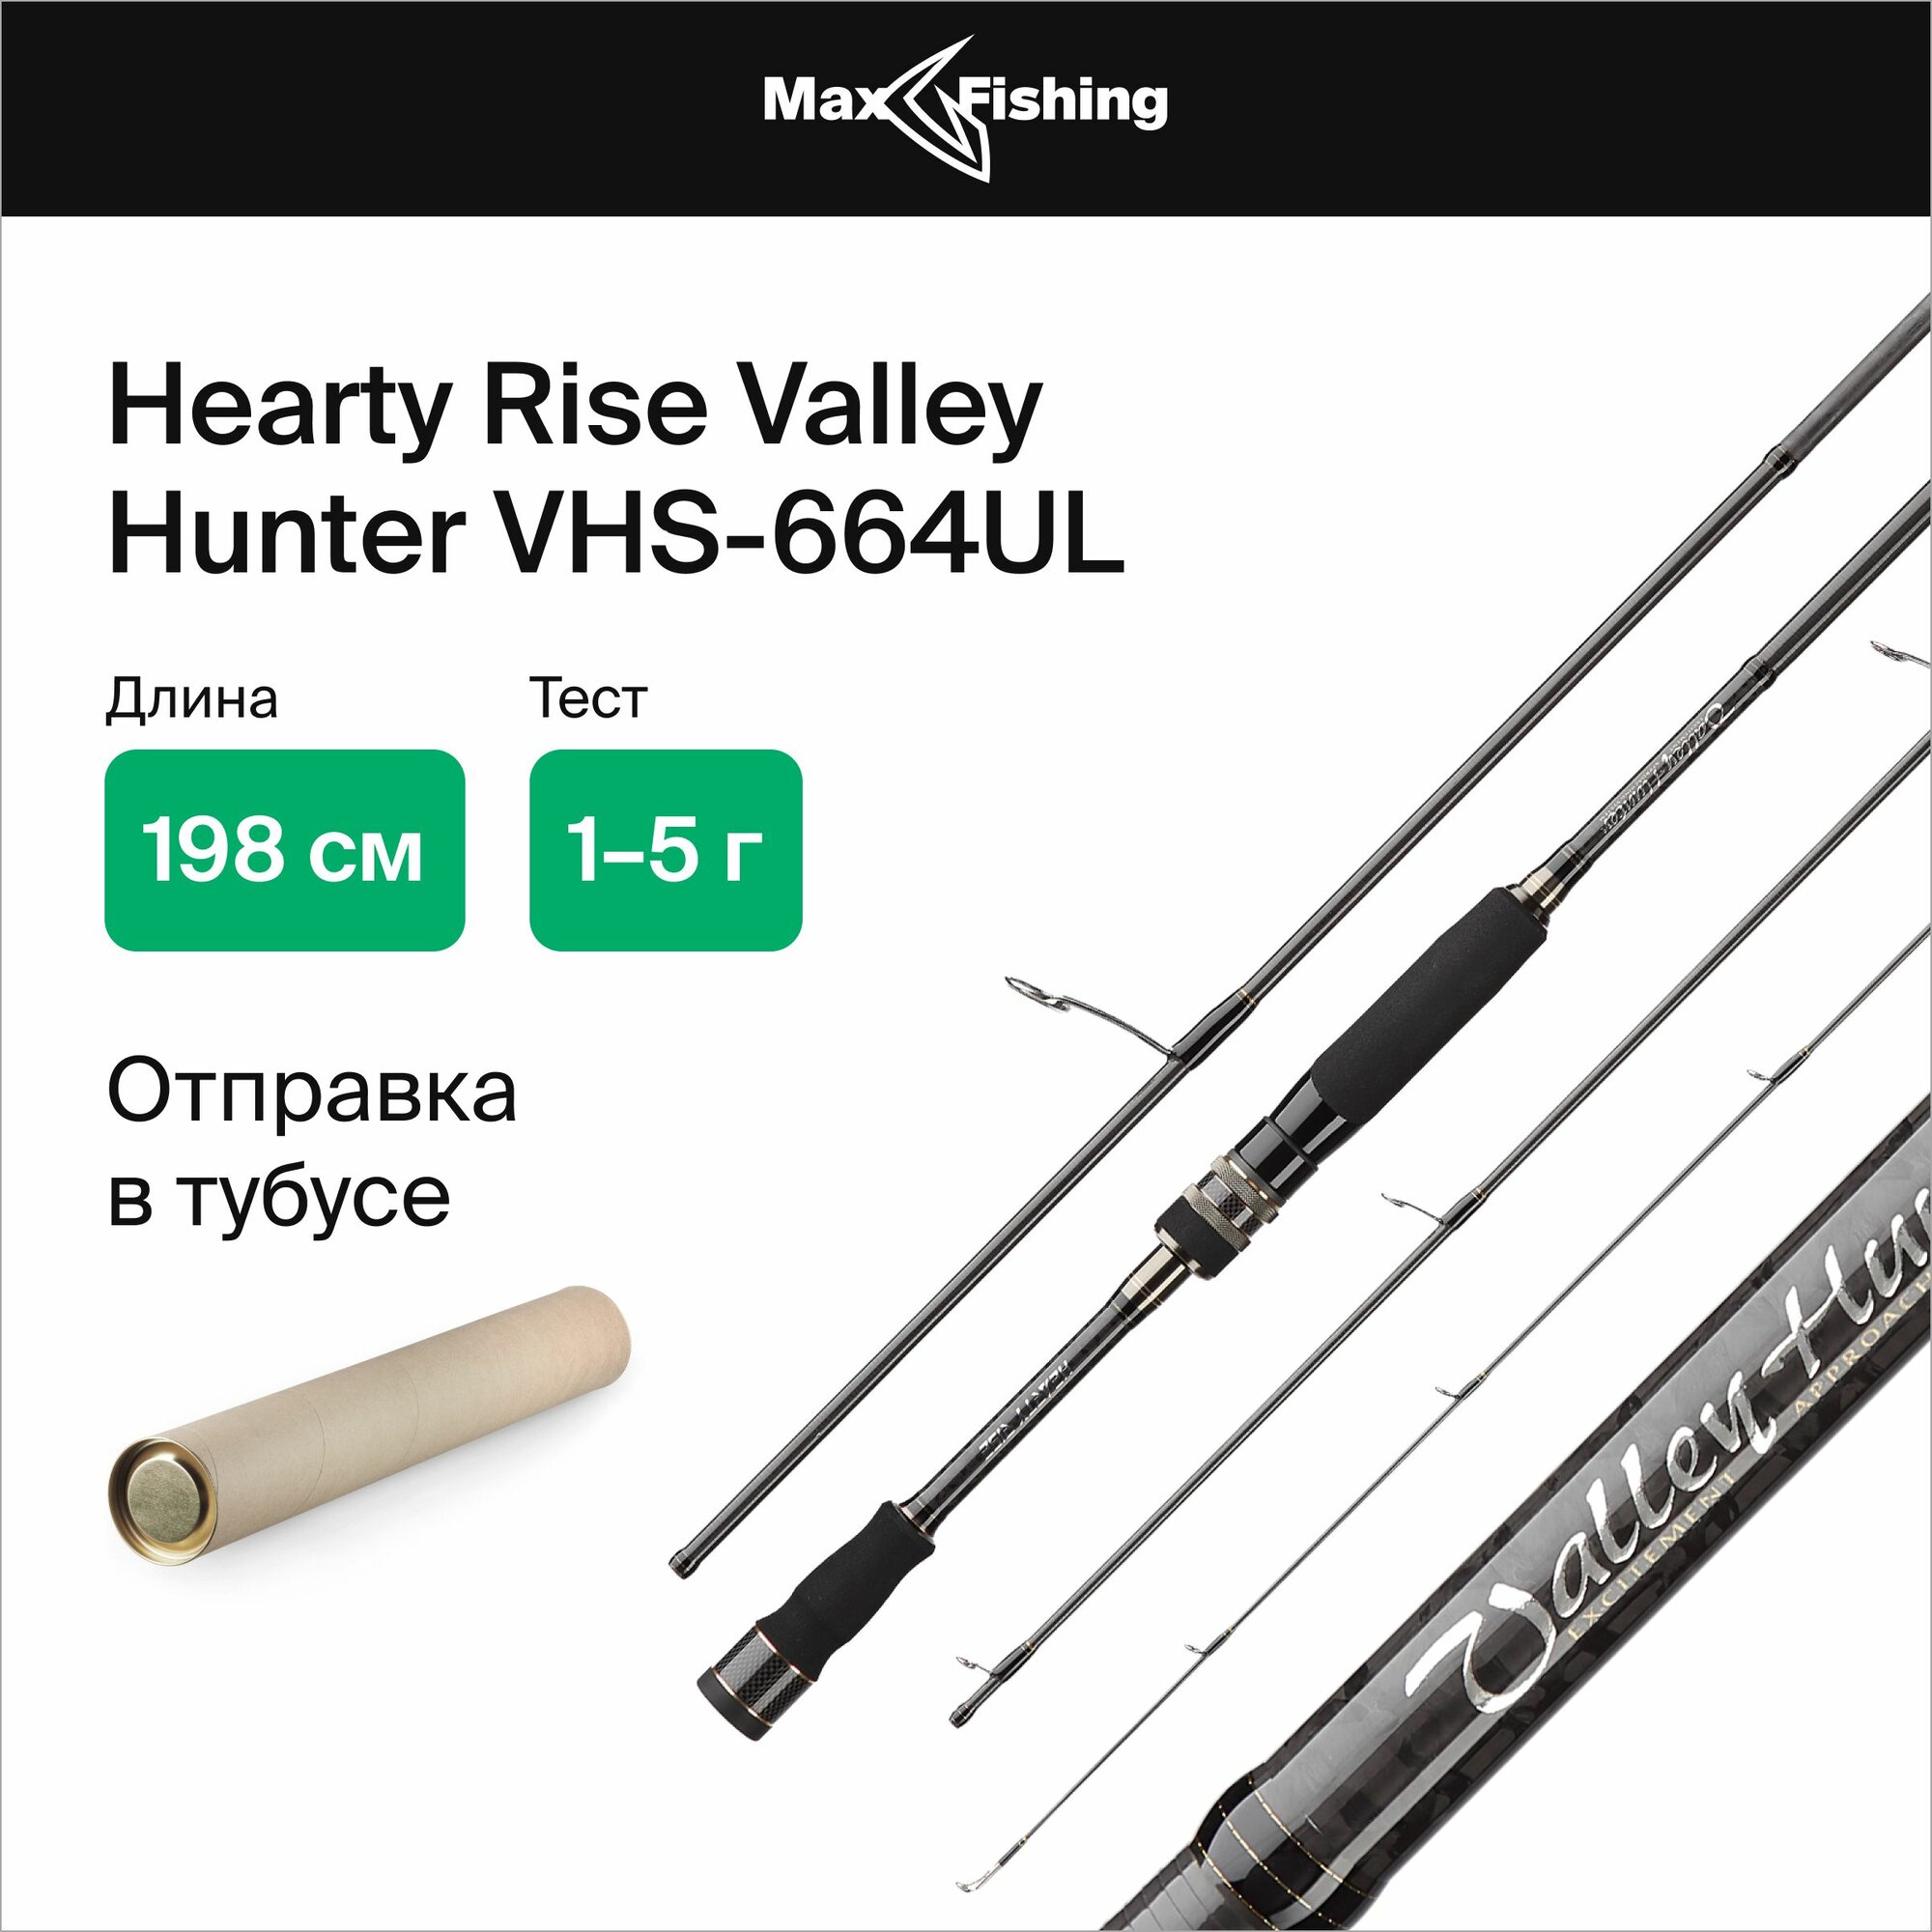 Спиннинг для рыбалки Hearty Rise Valley Hunter VHS-664UL 1-5гр, 198 см, для ловли форели, микродижга и рокфишинга, удилище спиннинговое, ультралайт